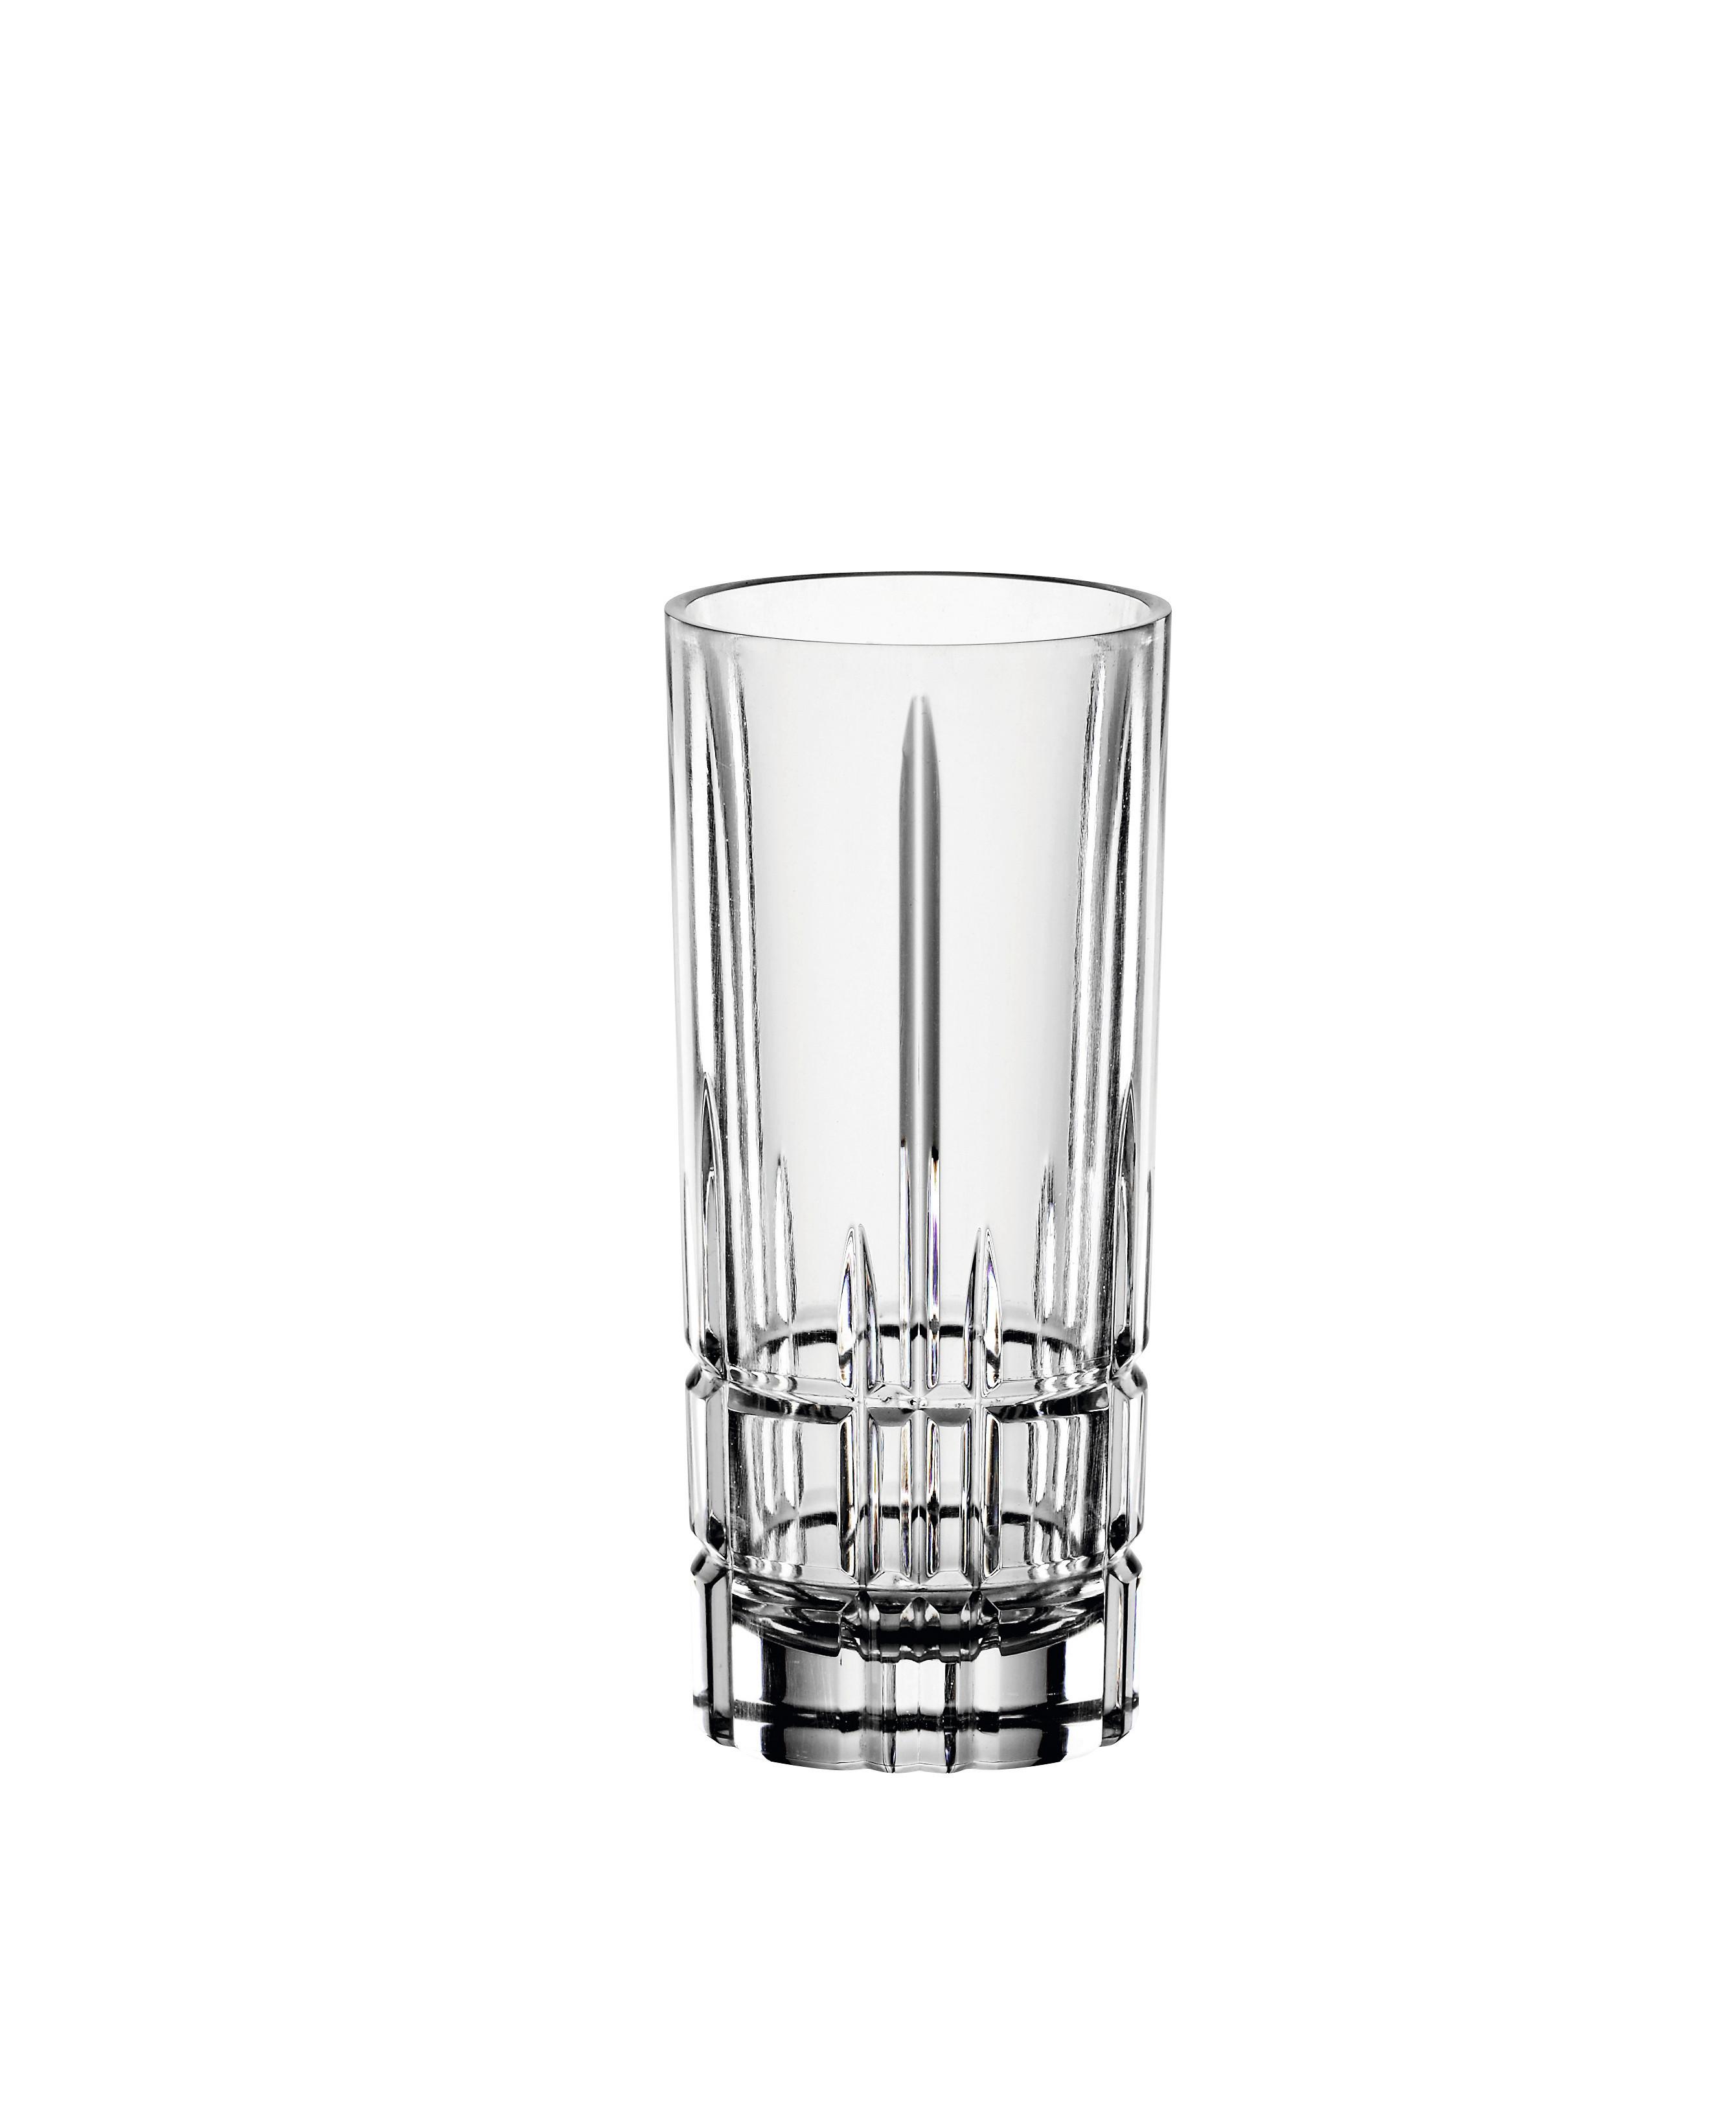 Schnapsglas Perfect Serve, 4-teilig - Klar, MODERN, Glas (4,0/9,0/4,0cm) - Spiegelau